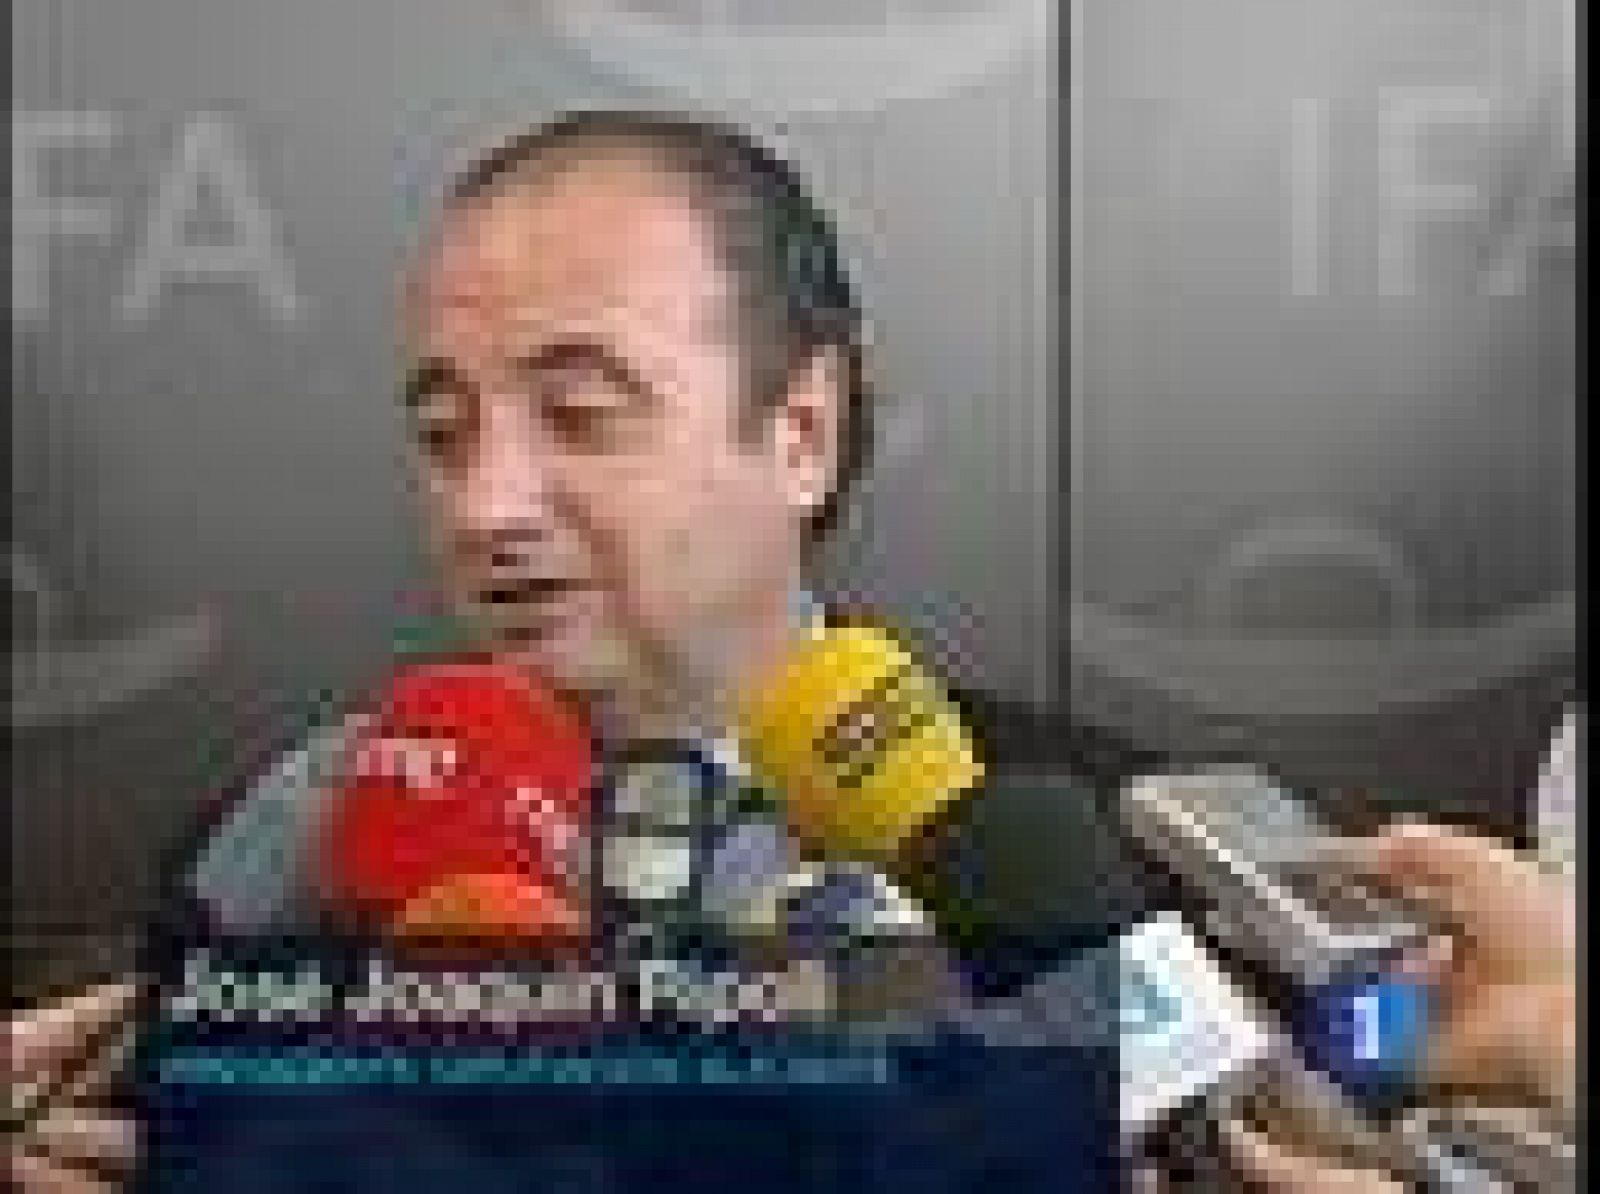 Ripoll aborda la confusión surgida tras el Comité Ejecutivo Regional del PP Valenciano en el que Costa propuso una comisión de investigación de sus cuentas pero no presentó su dimisión, aunque Camps aseguró que había puesto a disposición sus cargos.